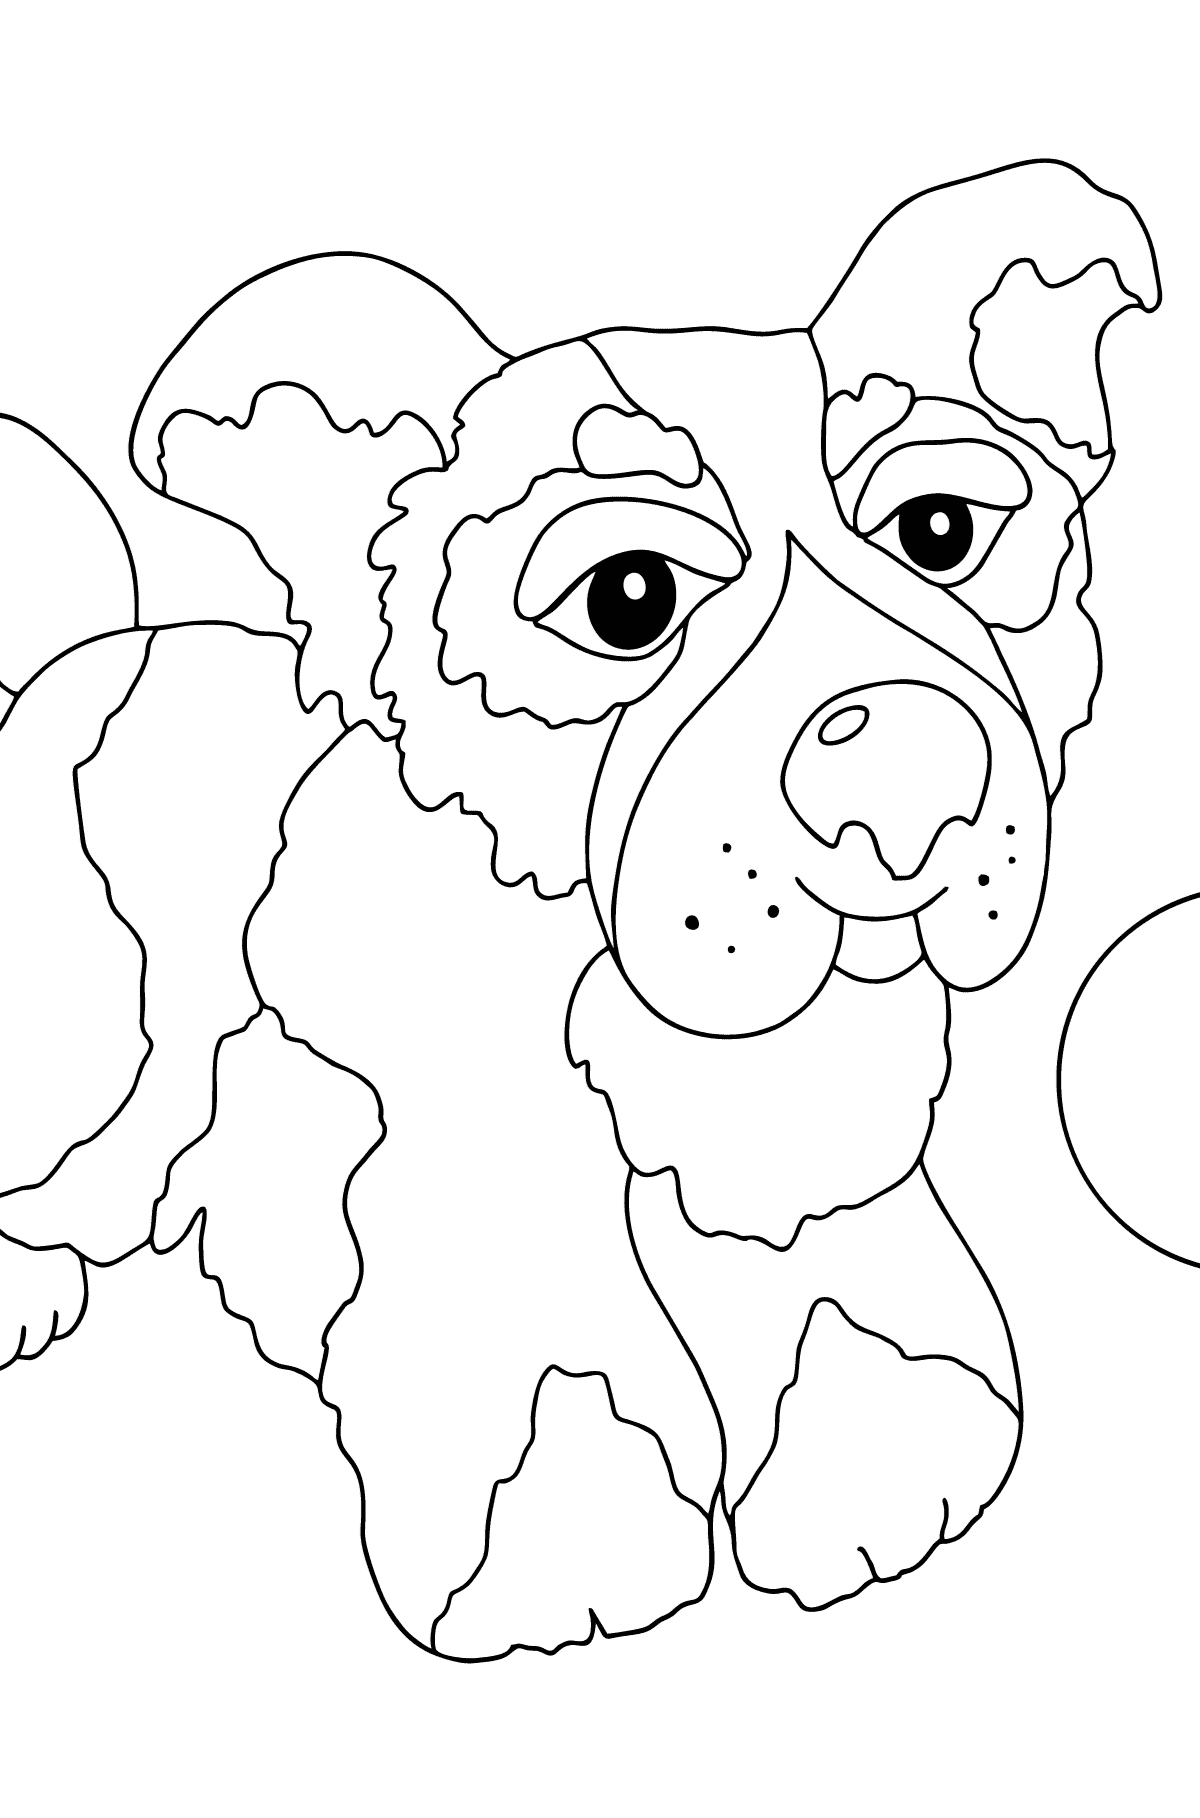 Målarbild bra hund (lätt) - Målarbilder För barn